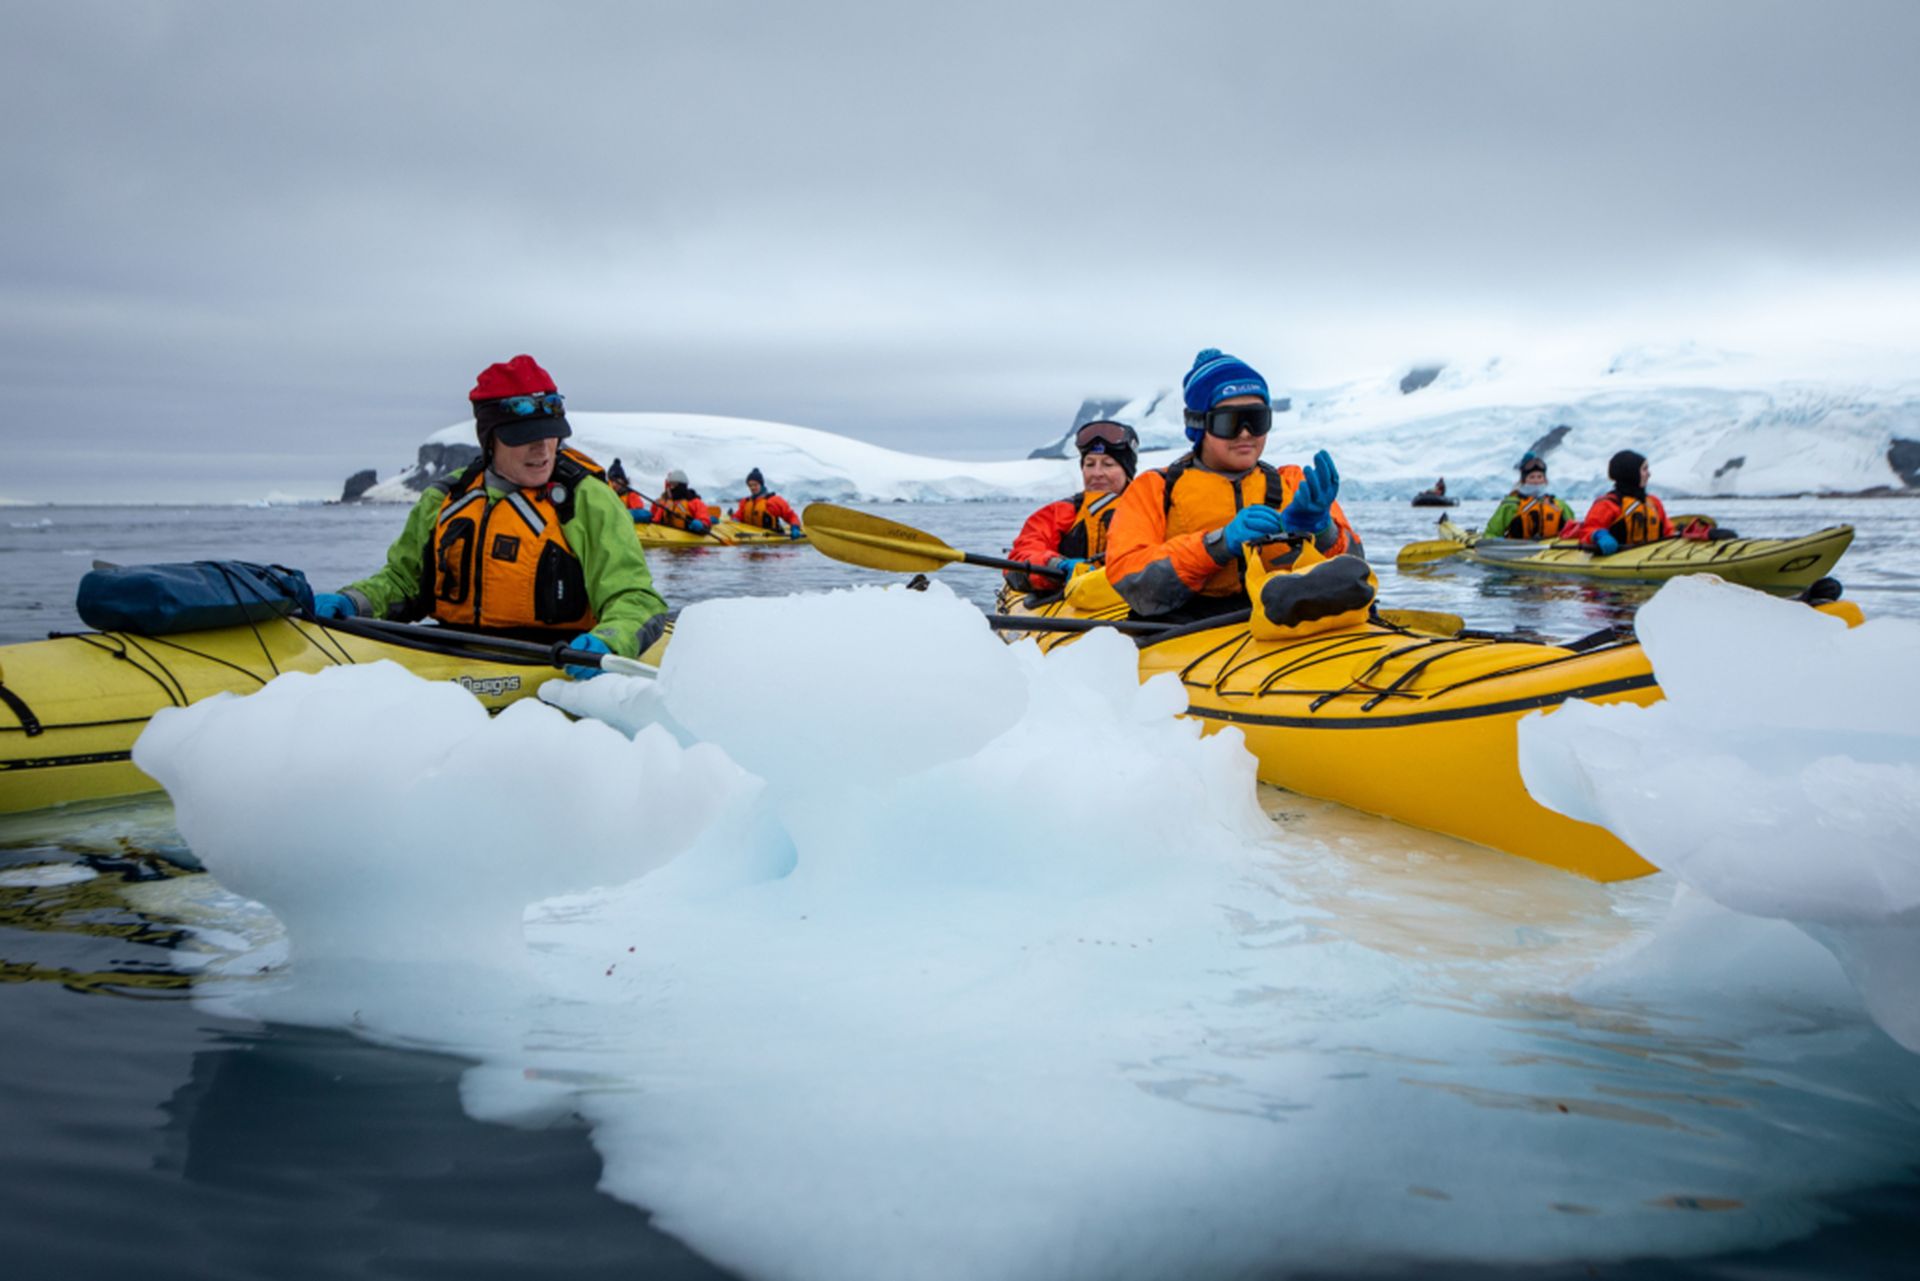 Marcus, Jaylee and Shauna Kayaking in Antarctica